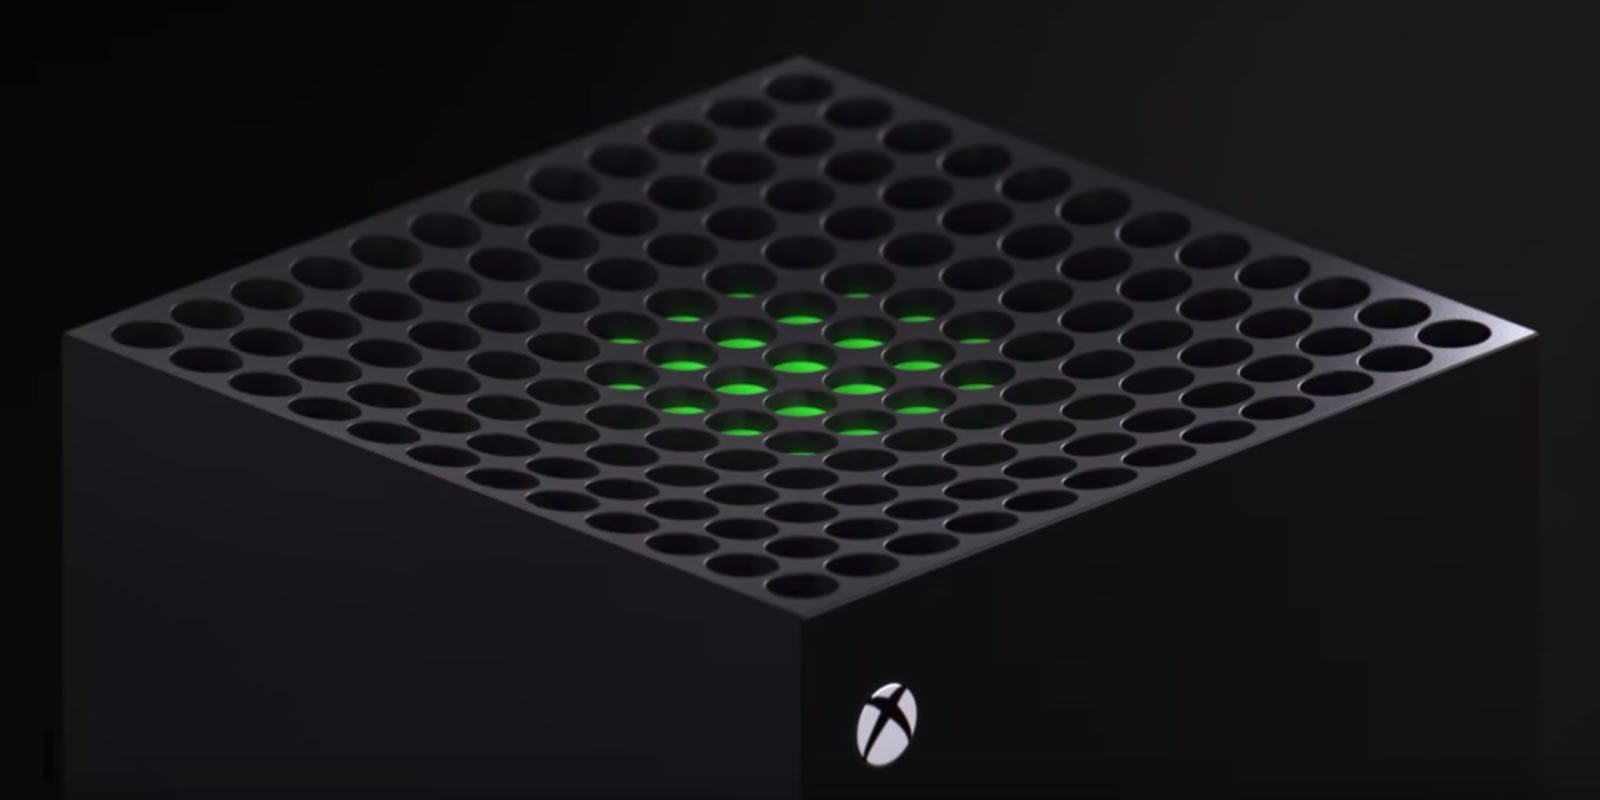 Aparece un supuesto prototipo de Xbox Series X